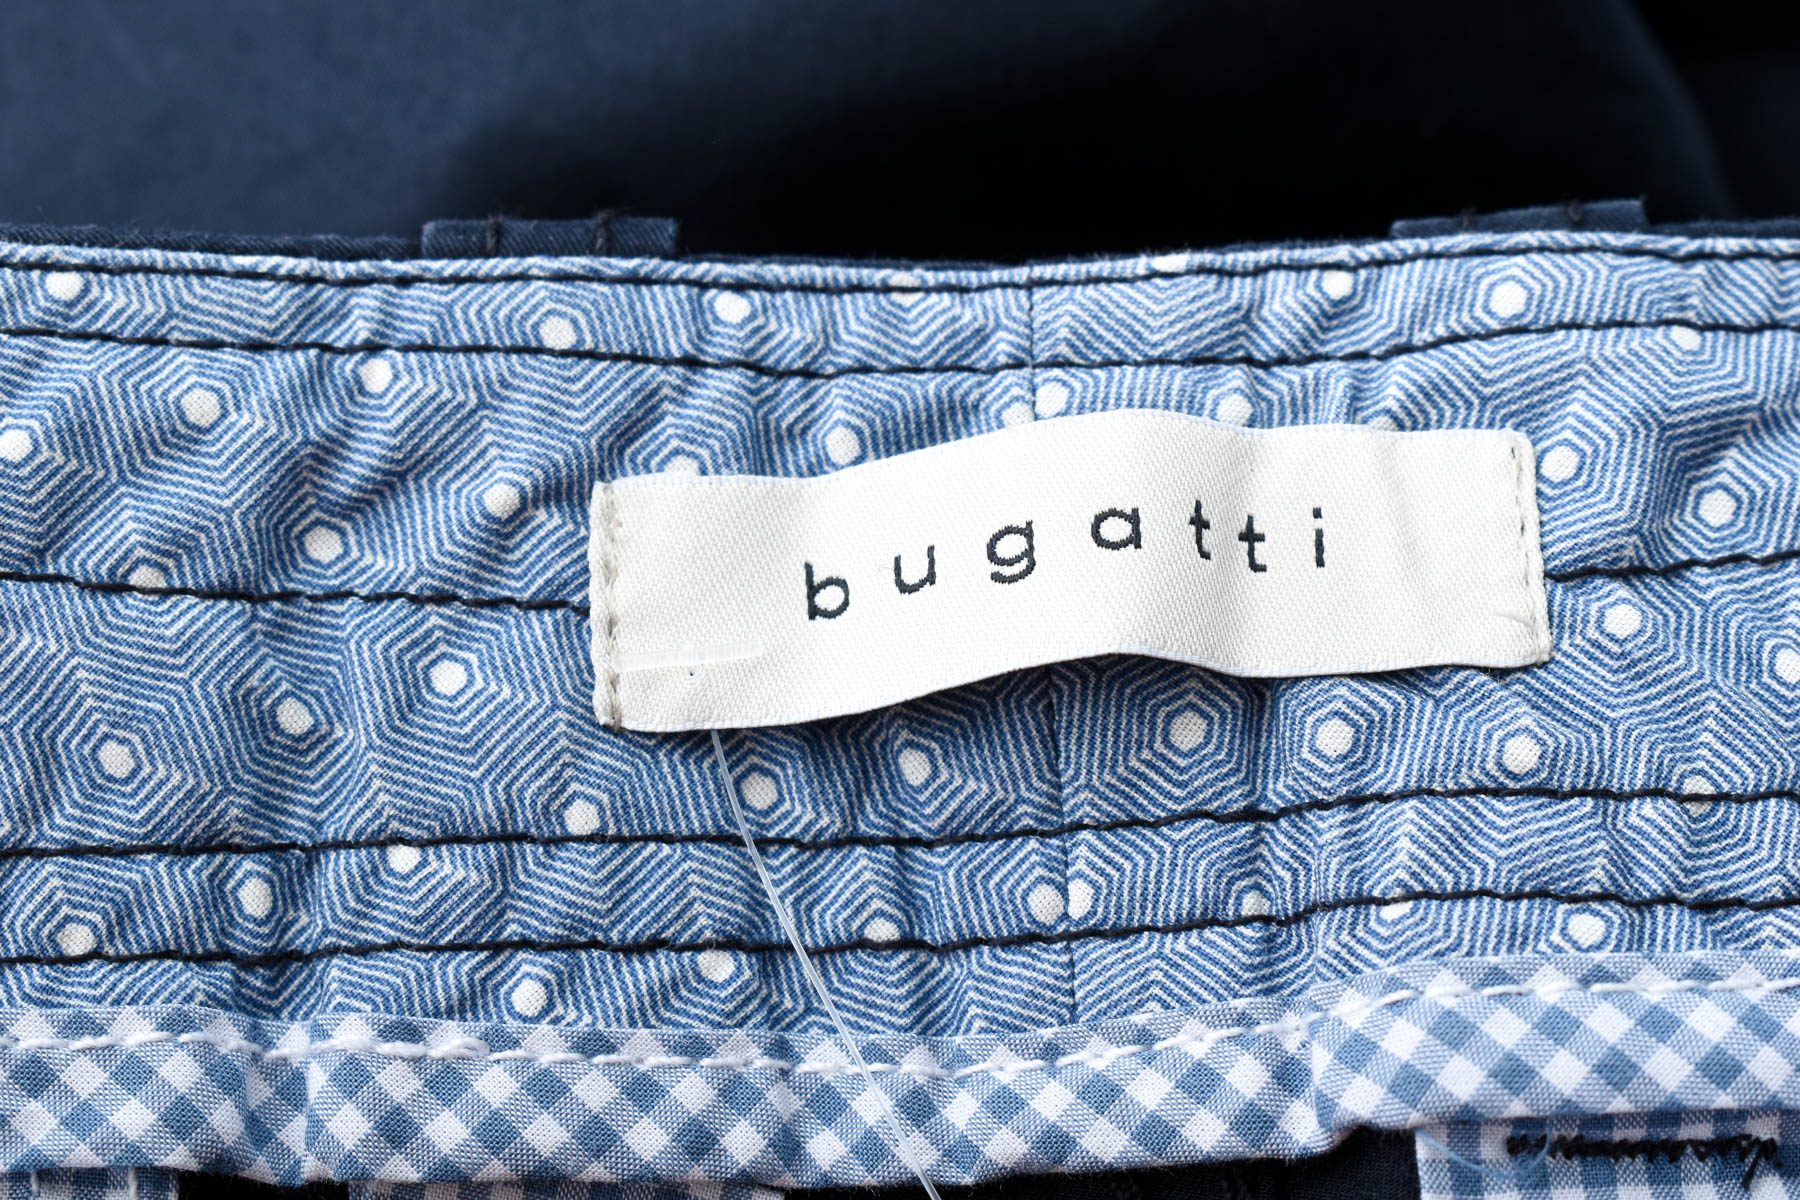 Men's shorts - Bugatti - 2